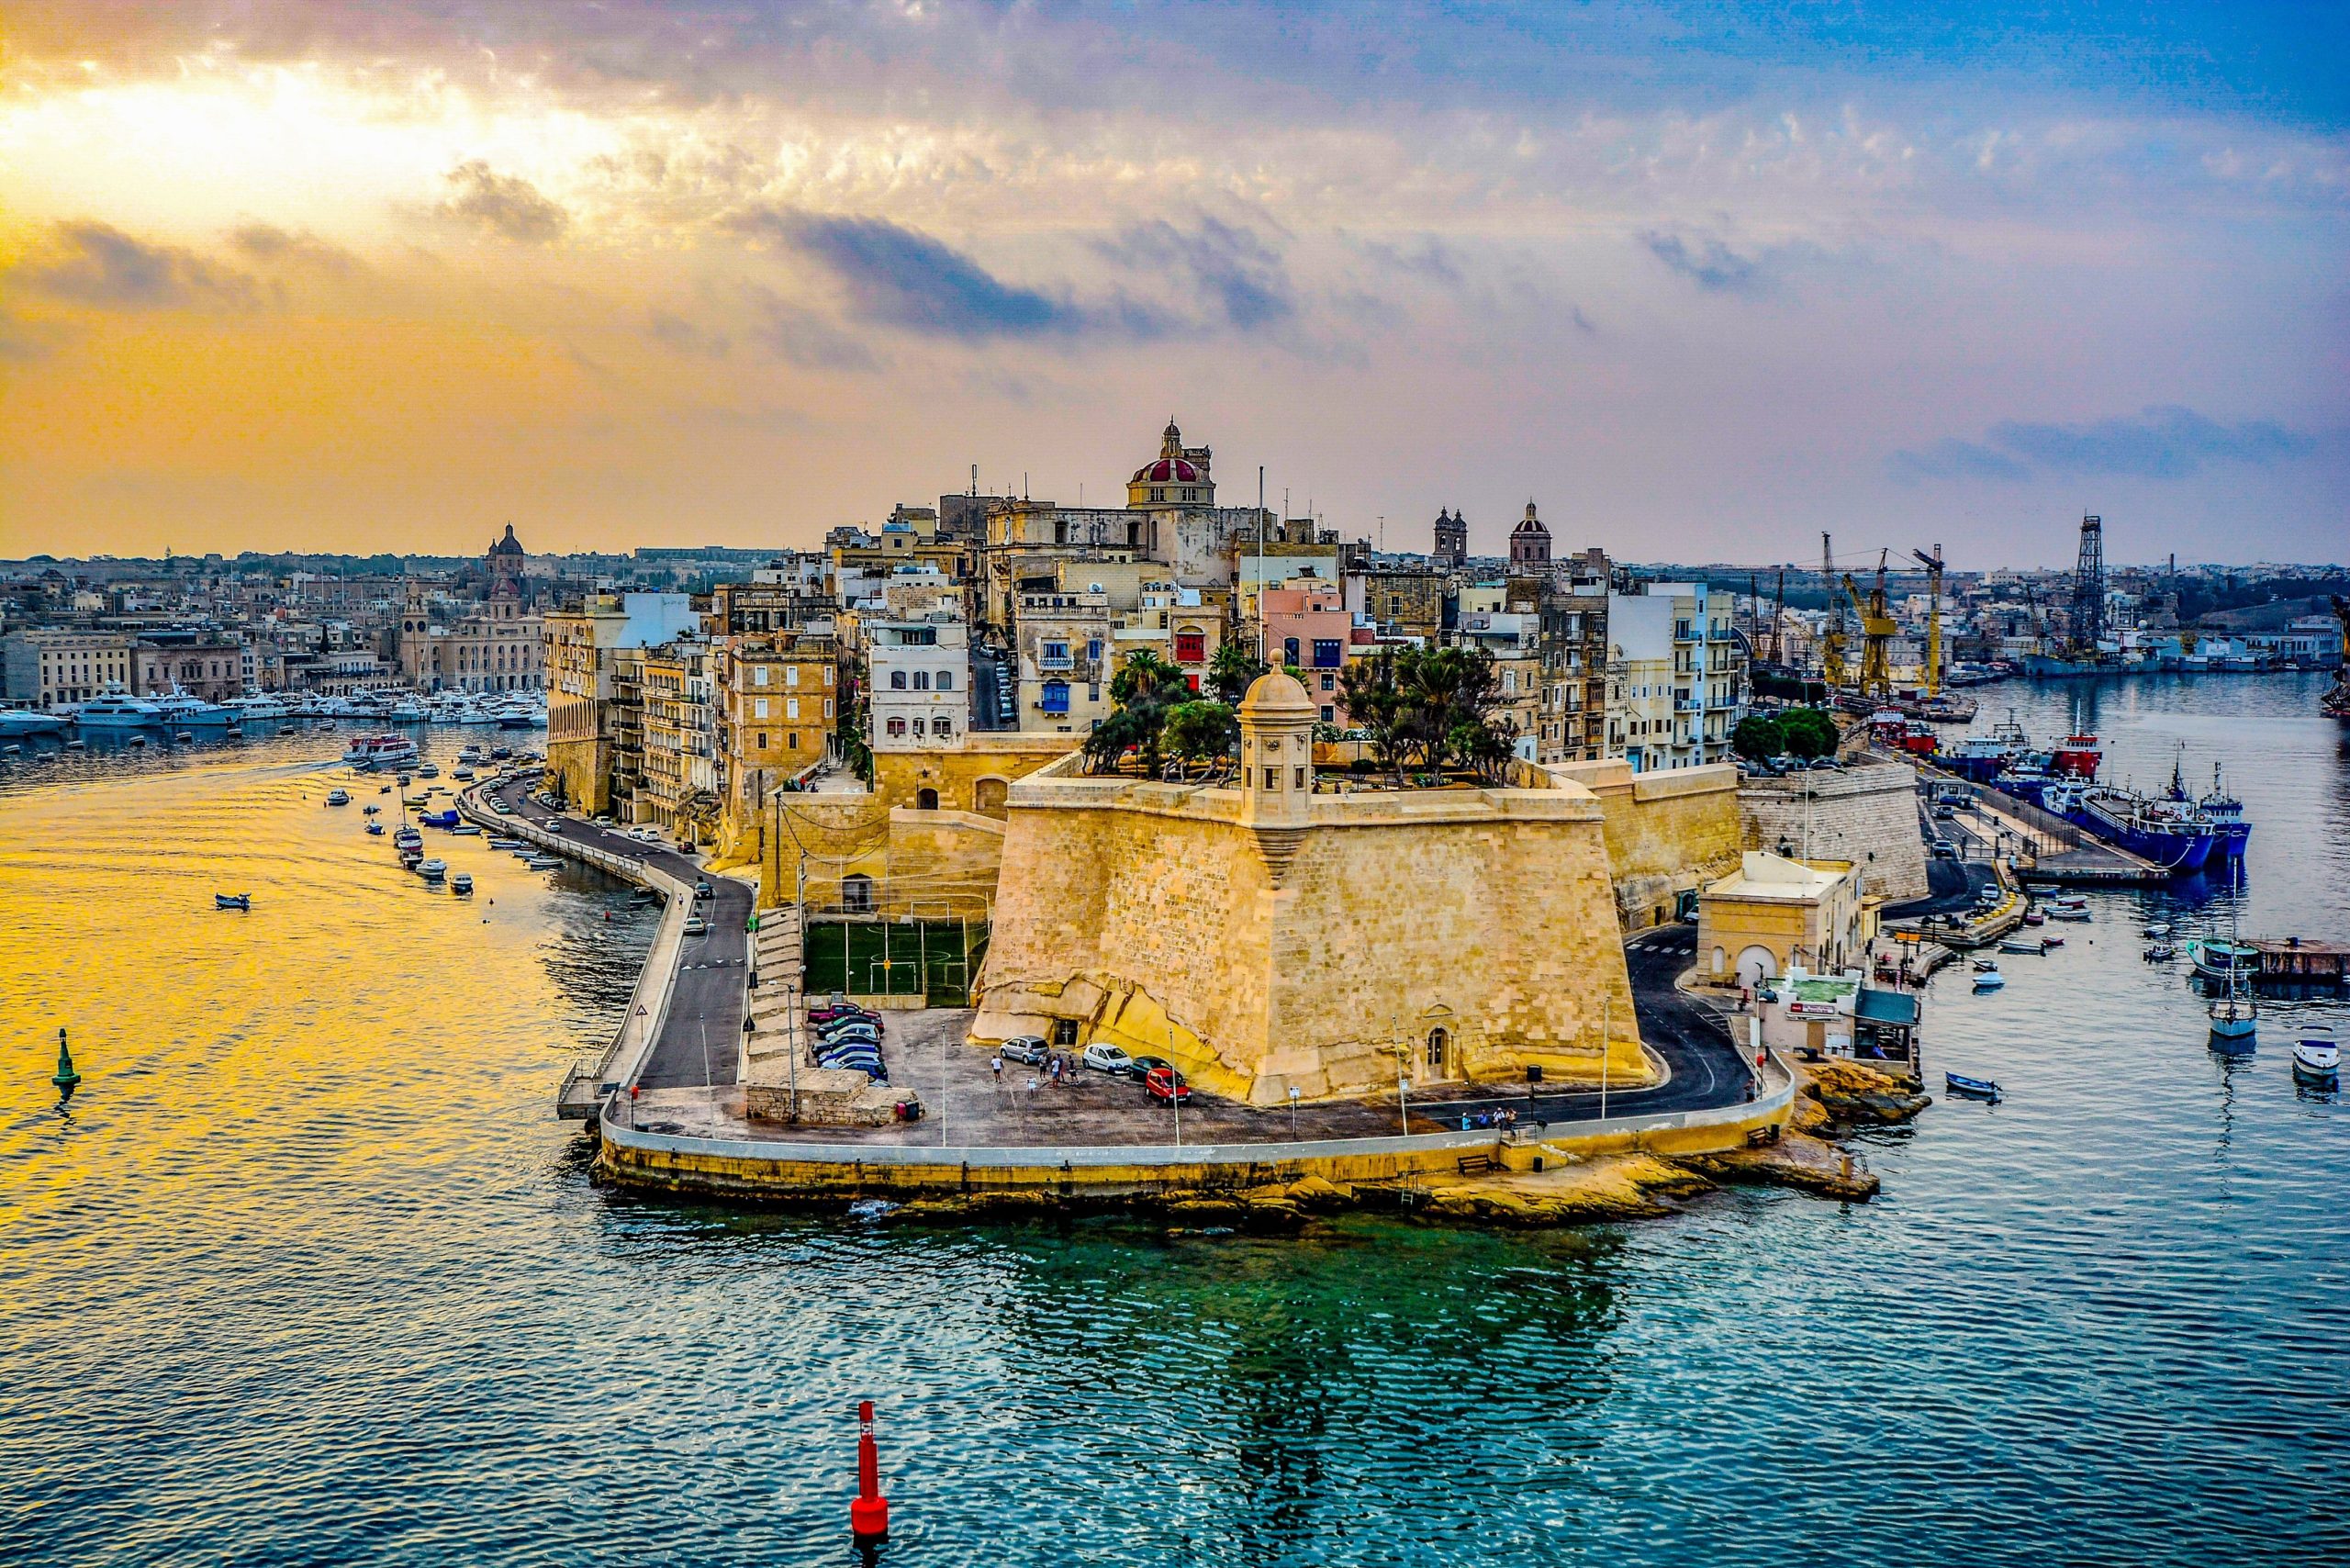 Malta Island The Complete Travel Guide